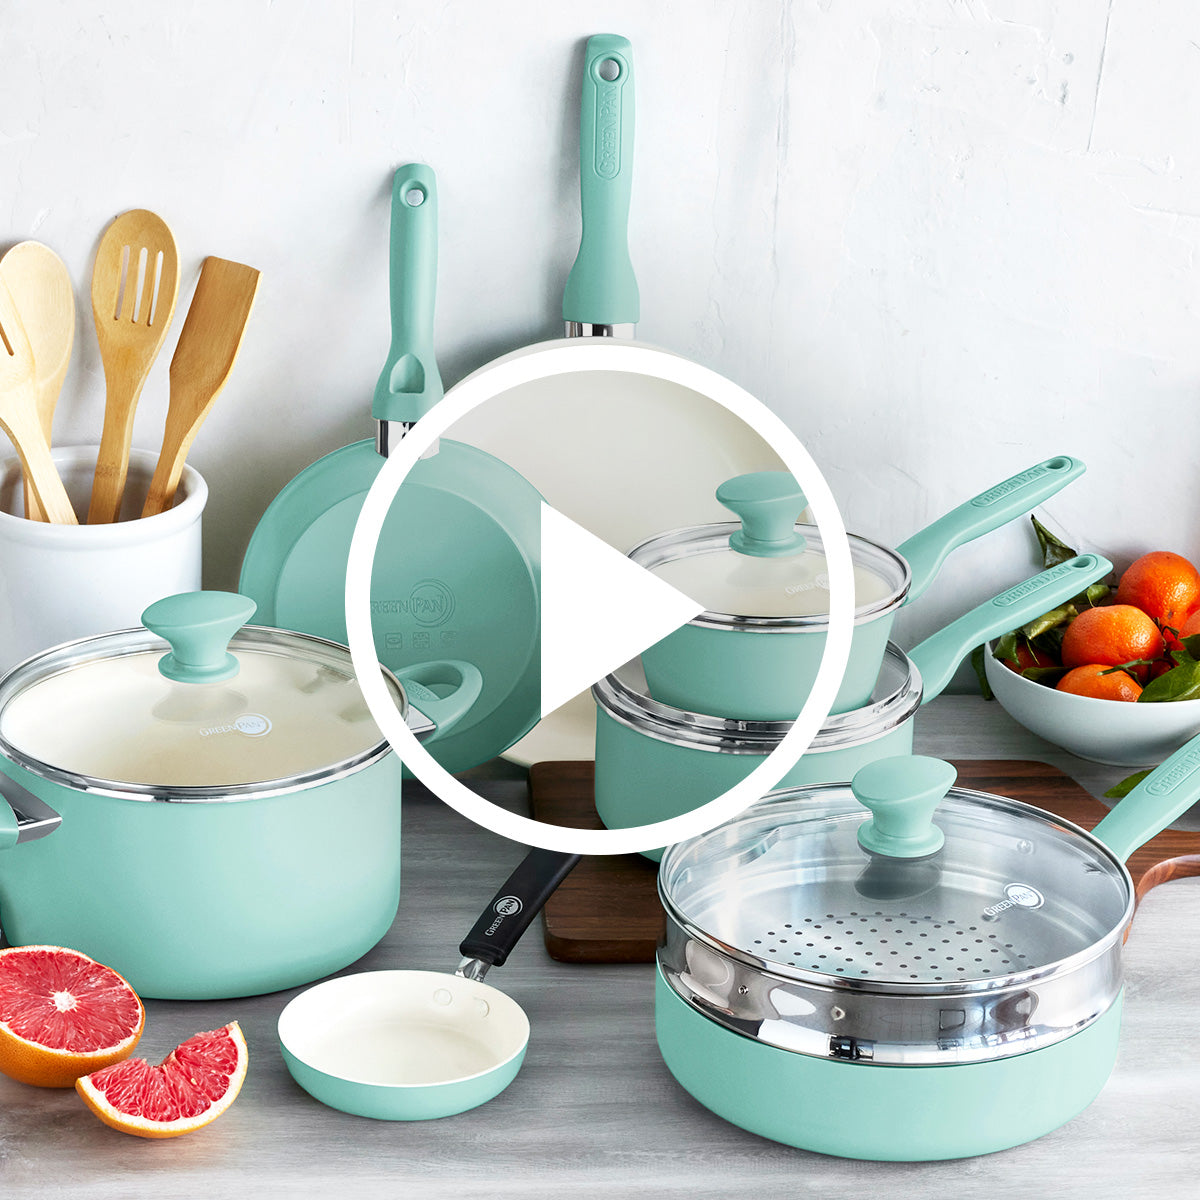 Rio Ceramic Nonstick 16-Piece Cookware Set, Turquoise